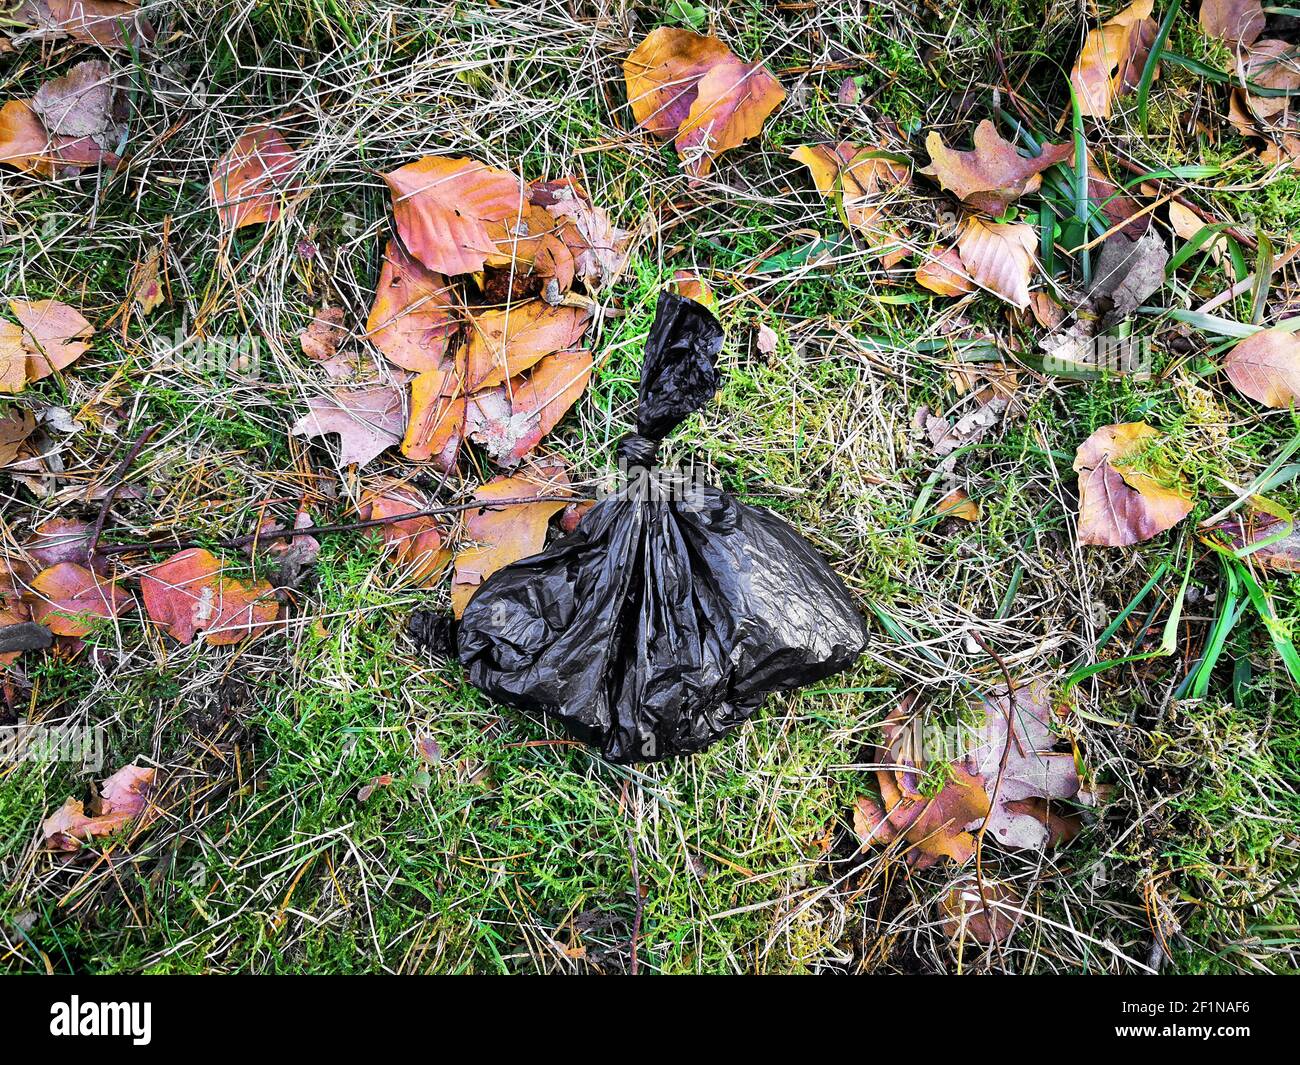 Excréments de chiens déposés dans un sac en plastique noir sur le côté de la route: Infraction environnementale Banque D'Images